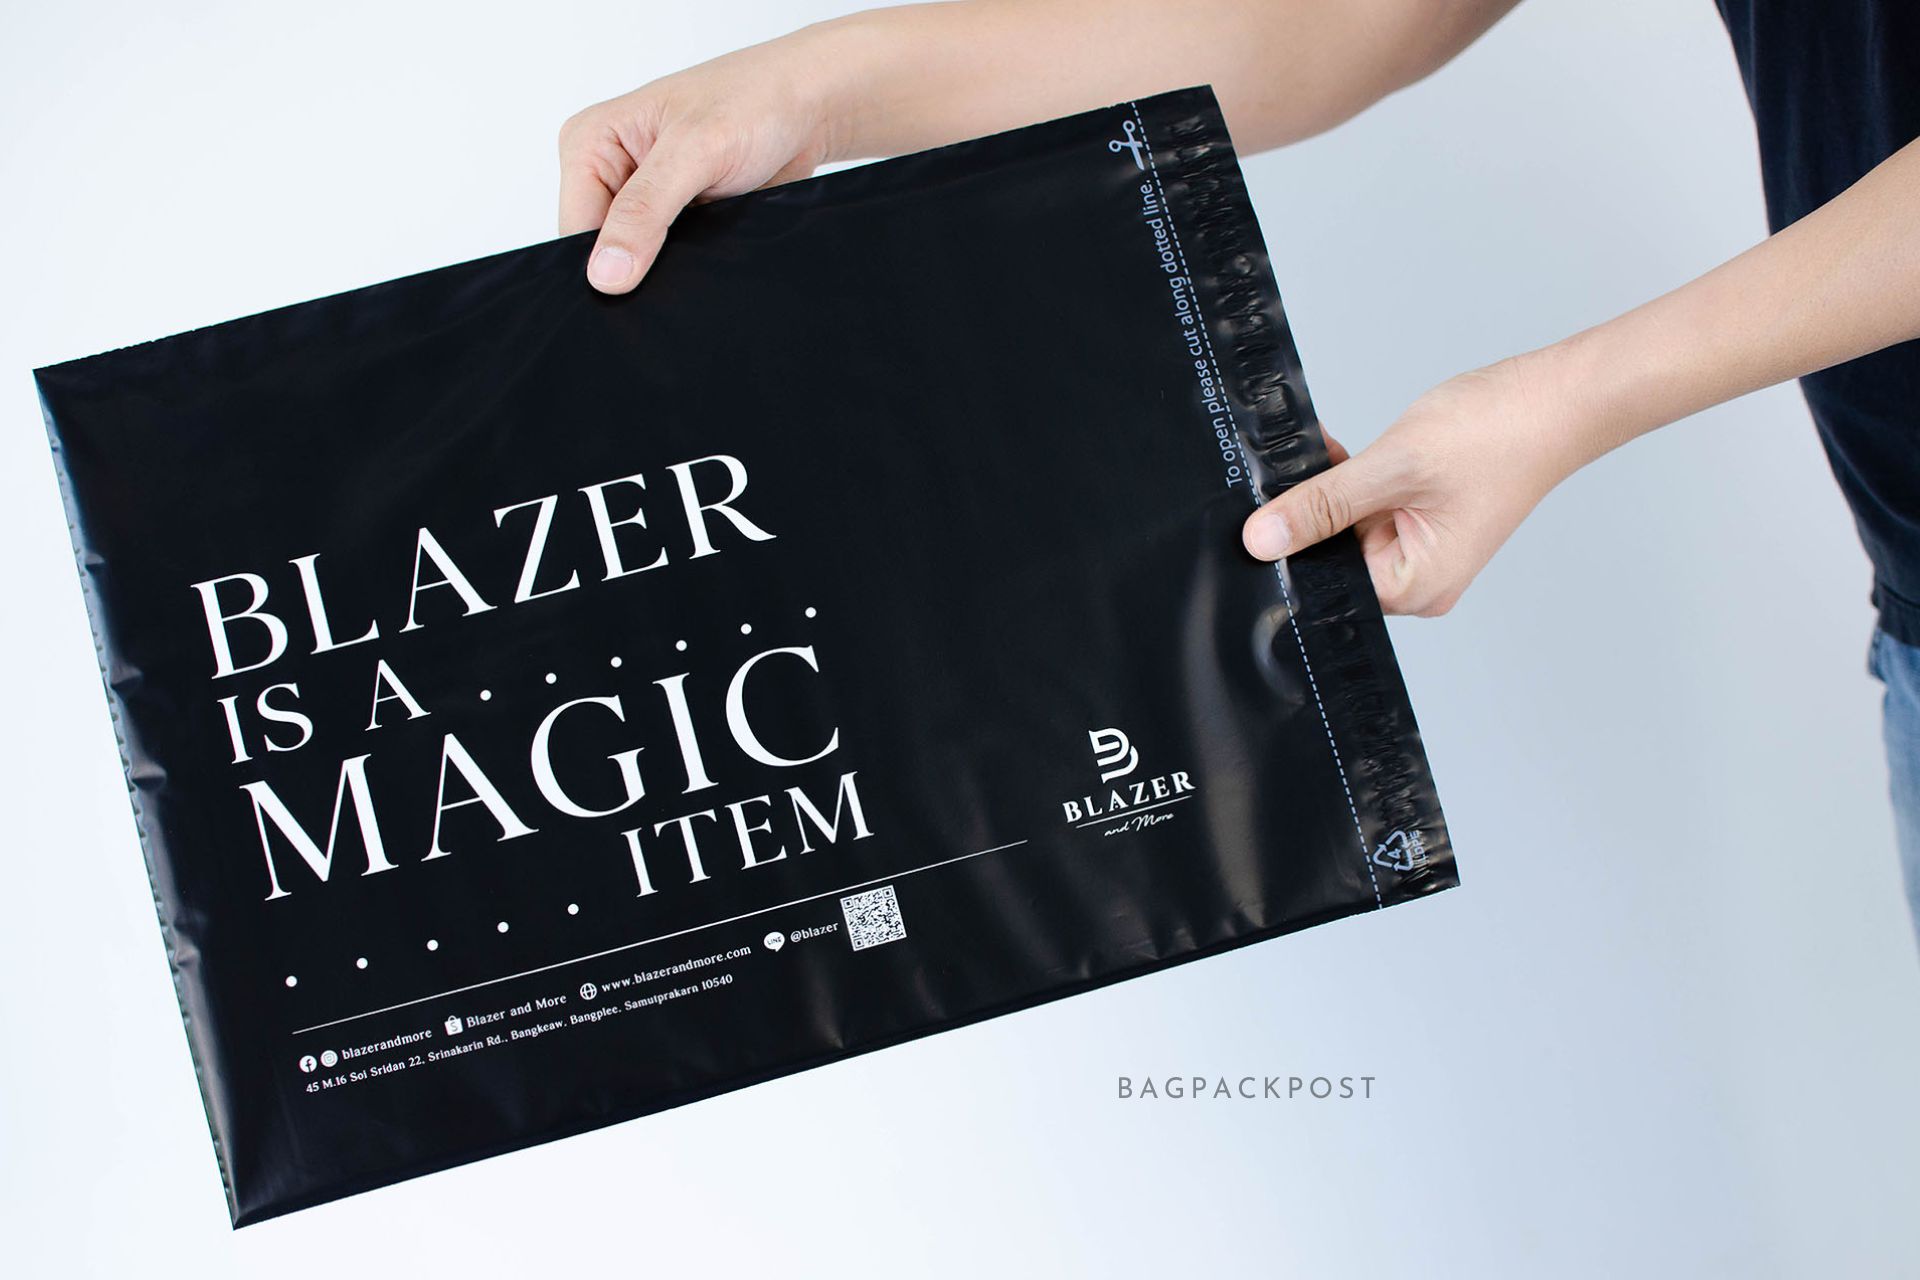 ผลิตถุงไปรษณีย์ ซองไปรษณีย์พิมพ์ลาย Blazer and More ซองไปรษณีย์สีดำ ถุงไปรษณีย์พิมพ์ลาย 2 BagPackPost